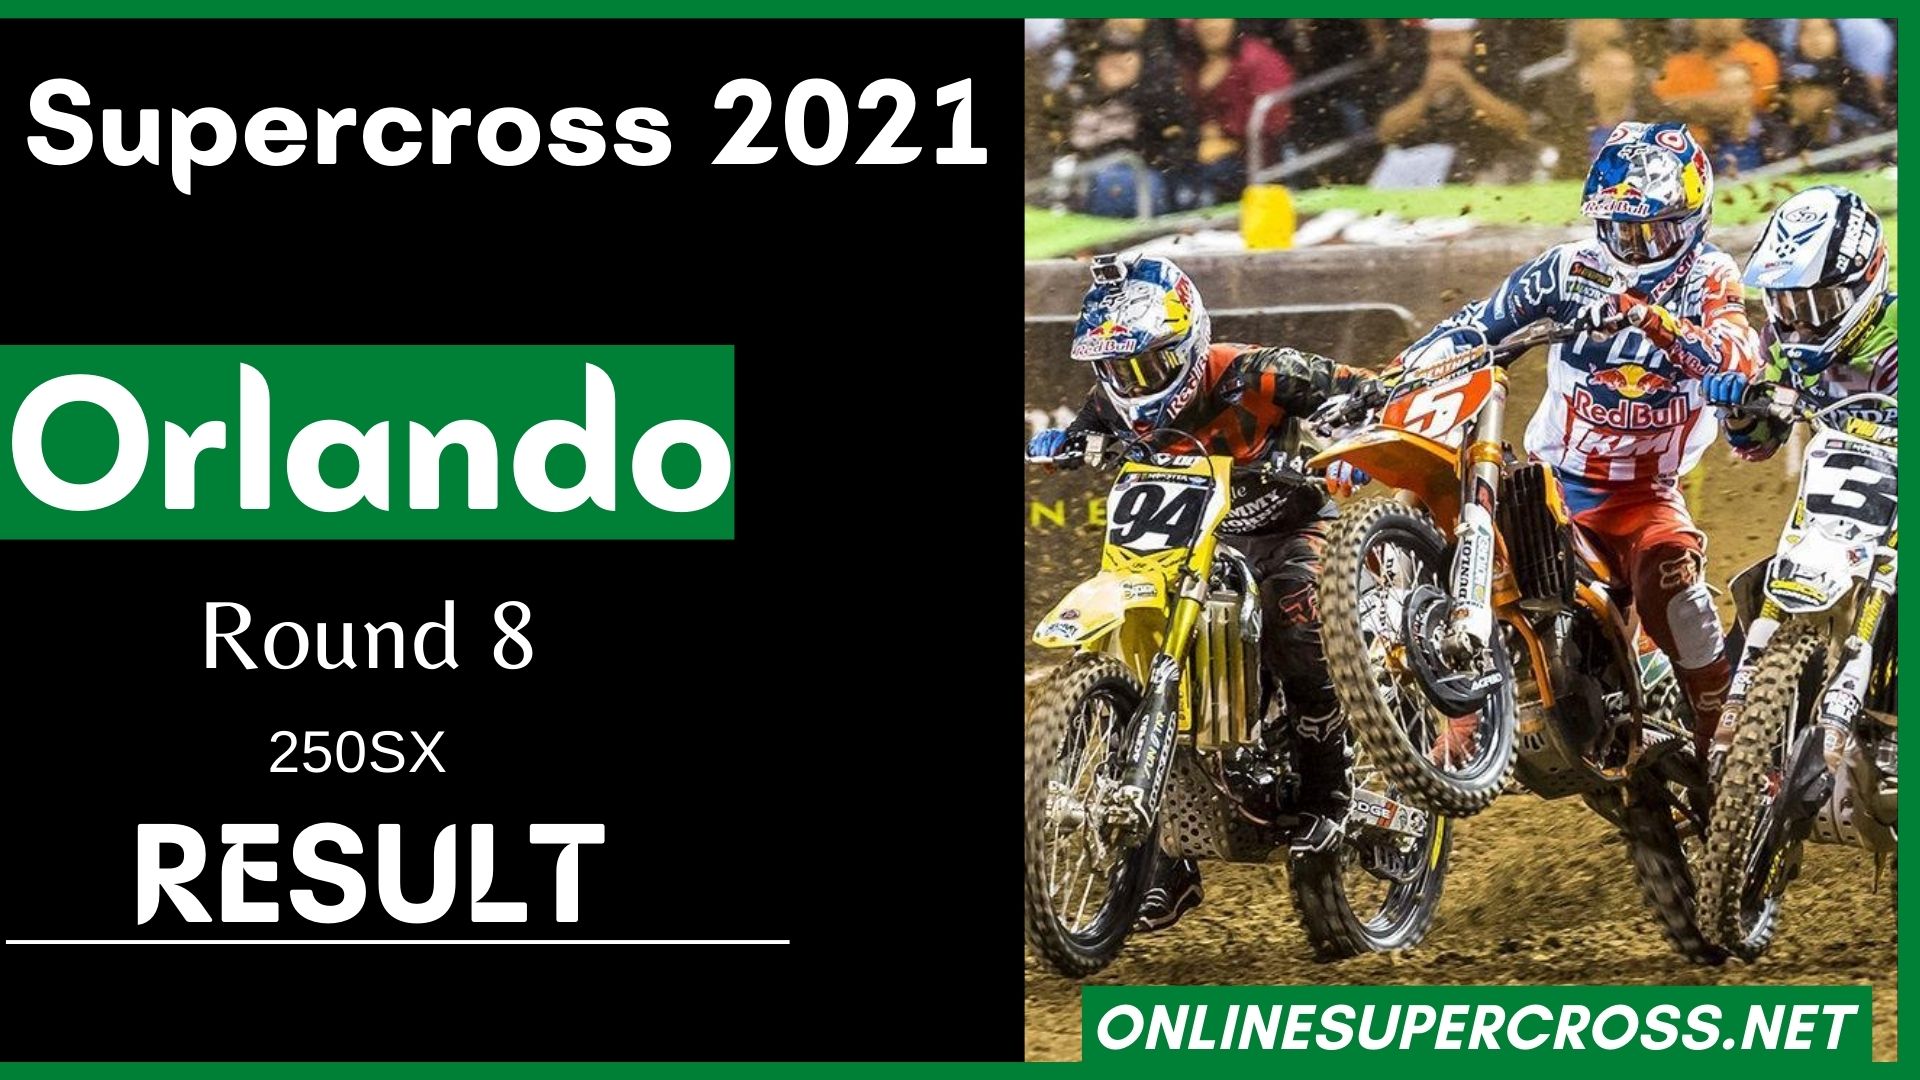 Orlando Round 8 Supercross 250SX Result 2021